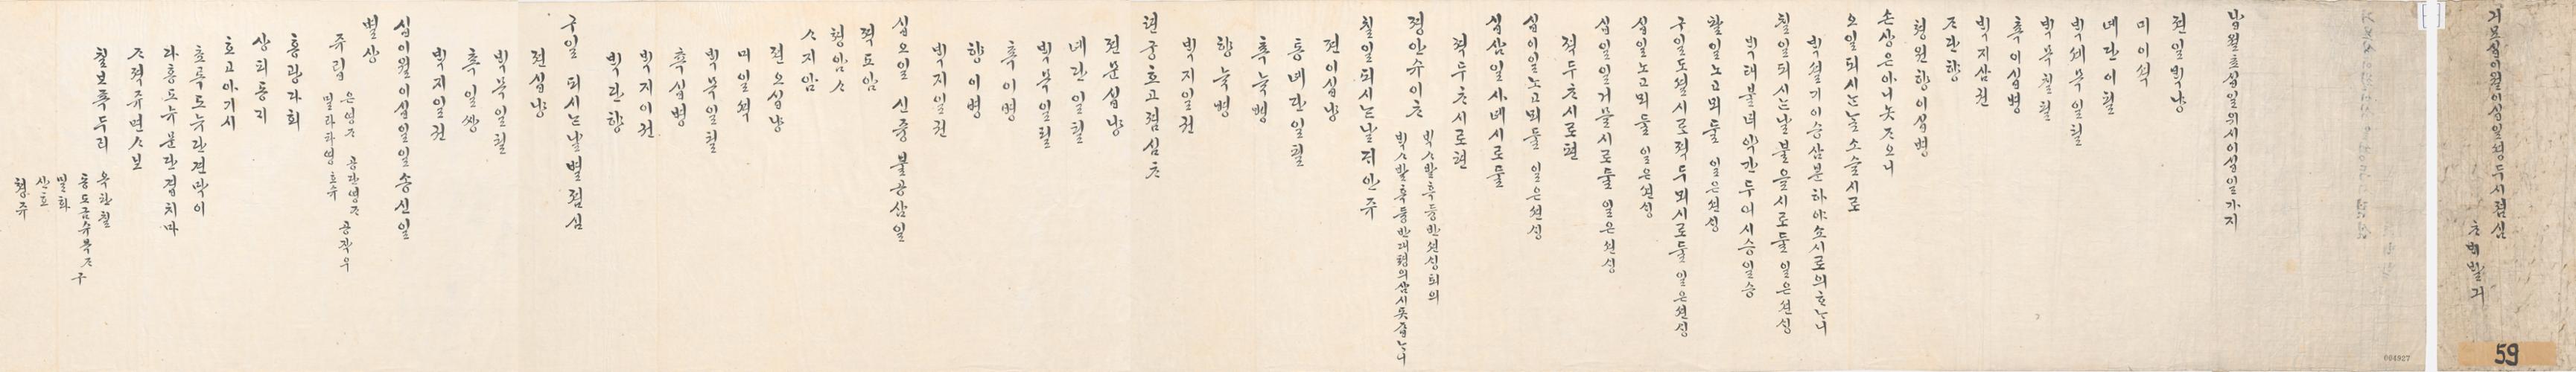 2_1879년 12월 왕세자 천연두 시 점심 차배 발기 1.jpg